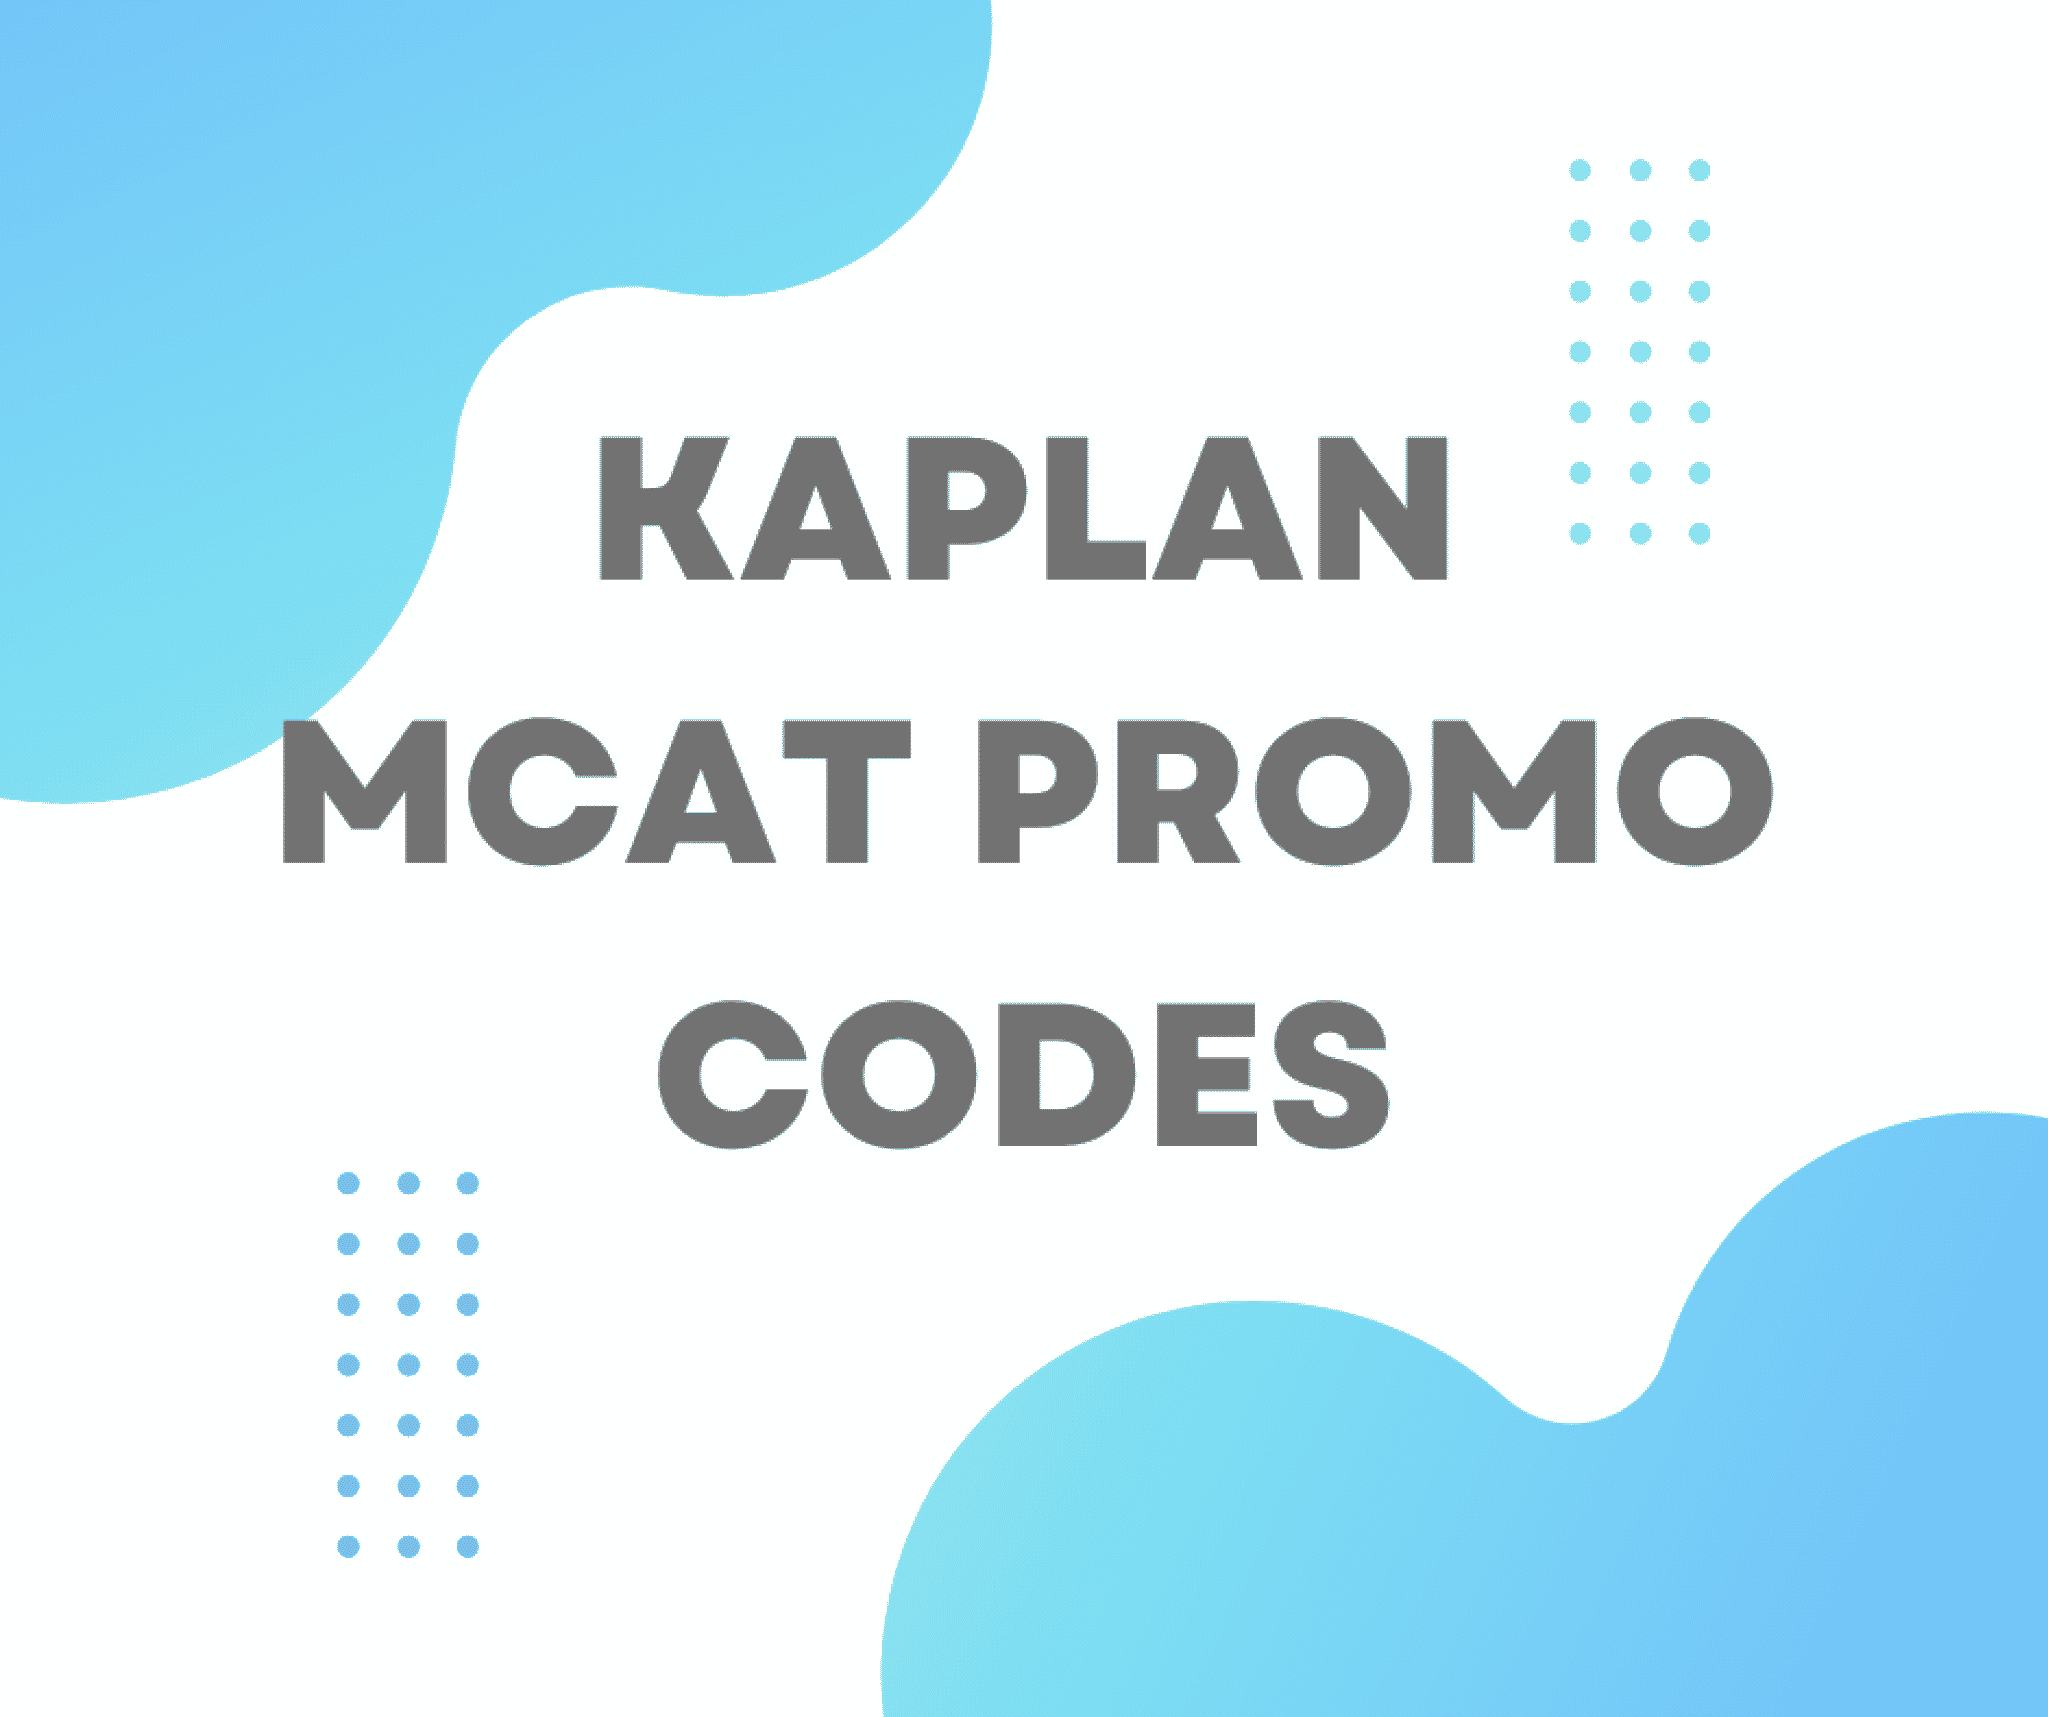 Best Kaplan MCAT Promo Codes & Deals